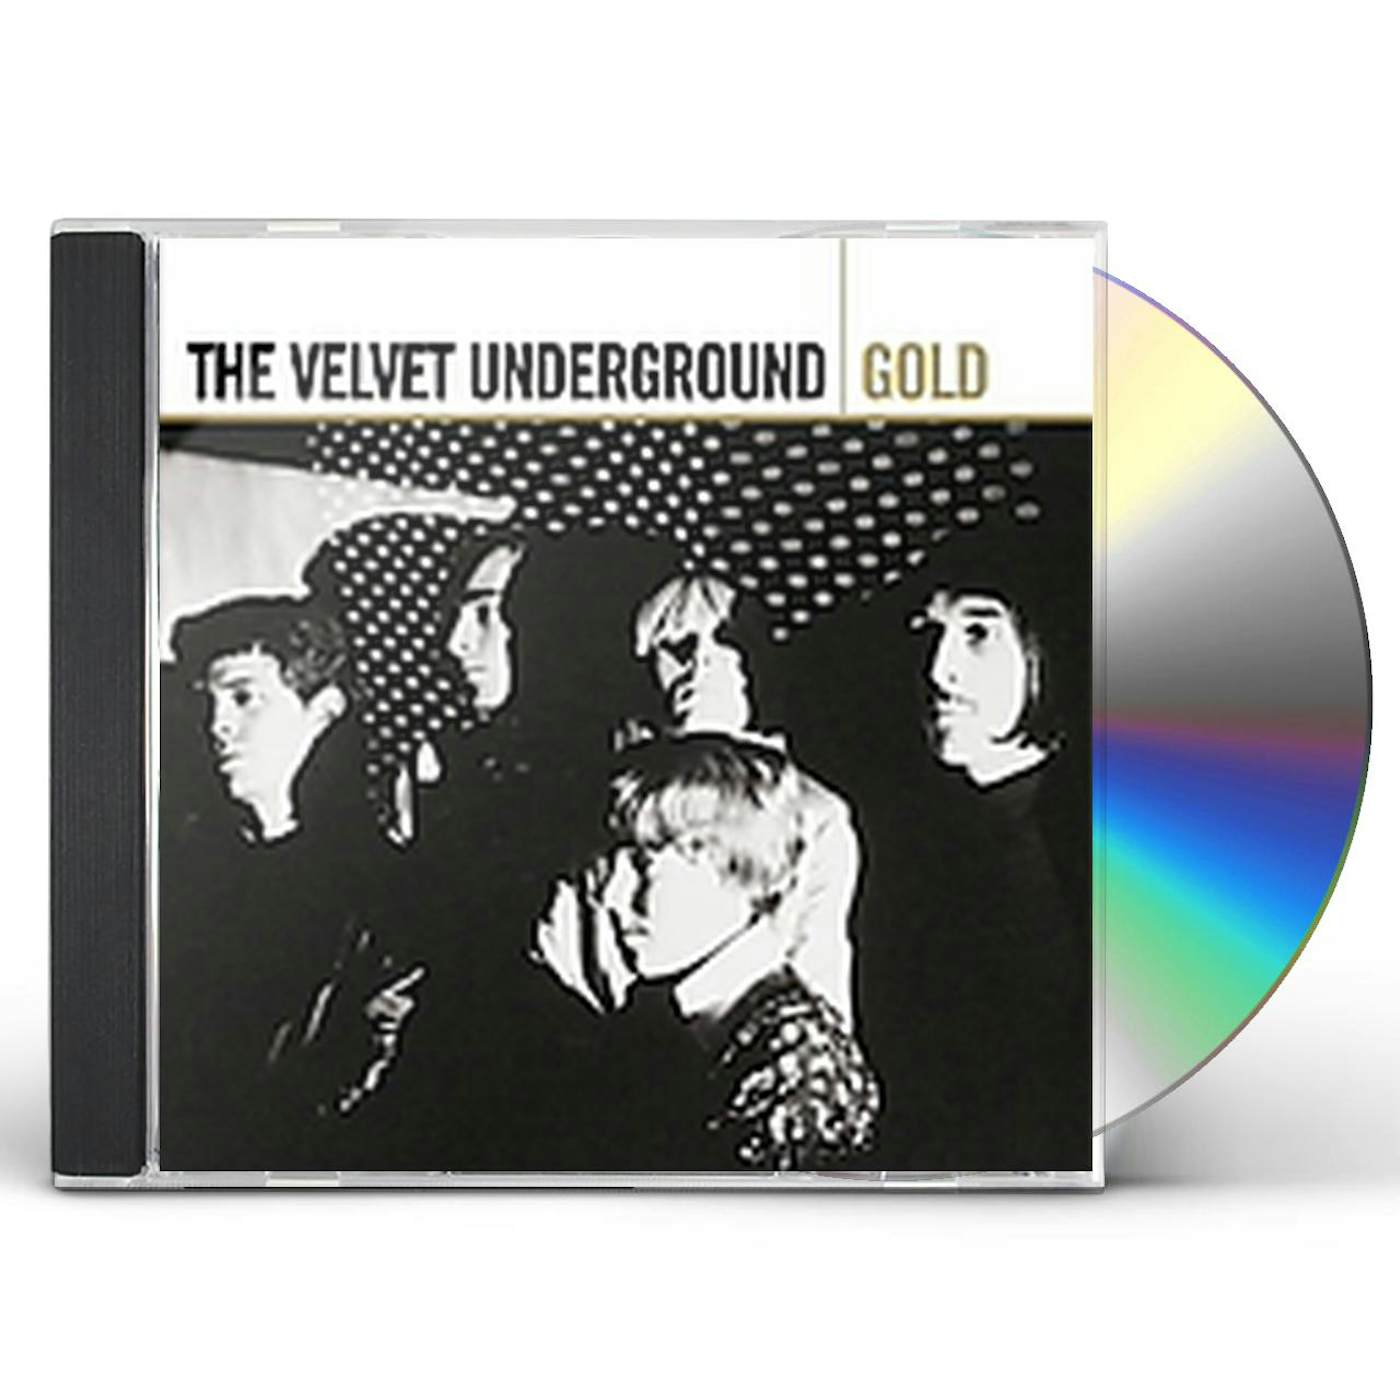 The Velvet Underground GOLD CD